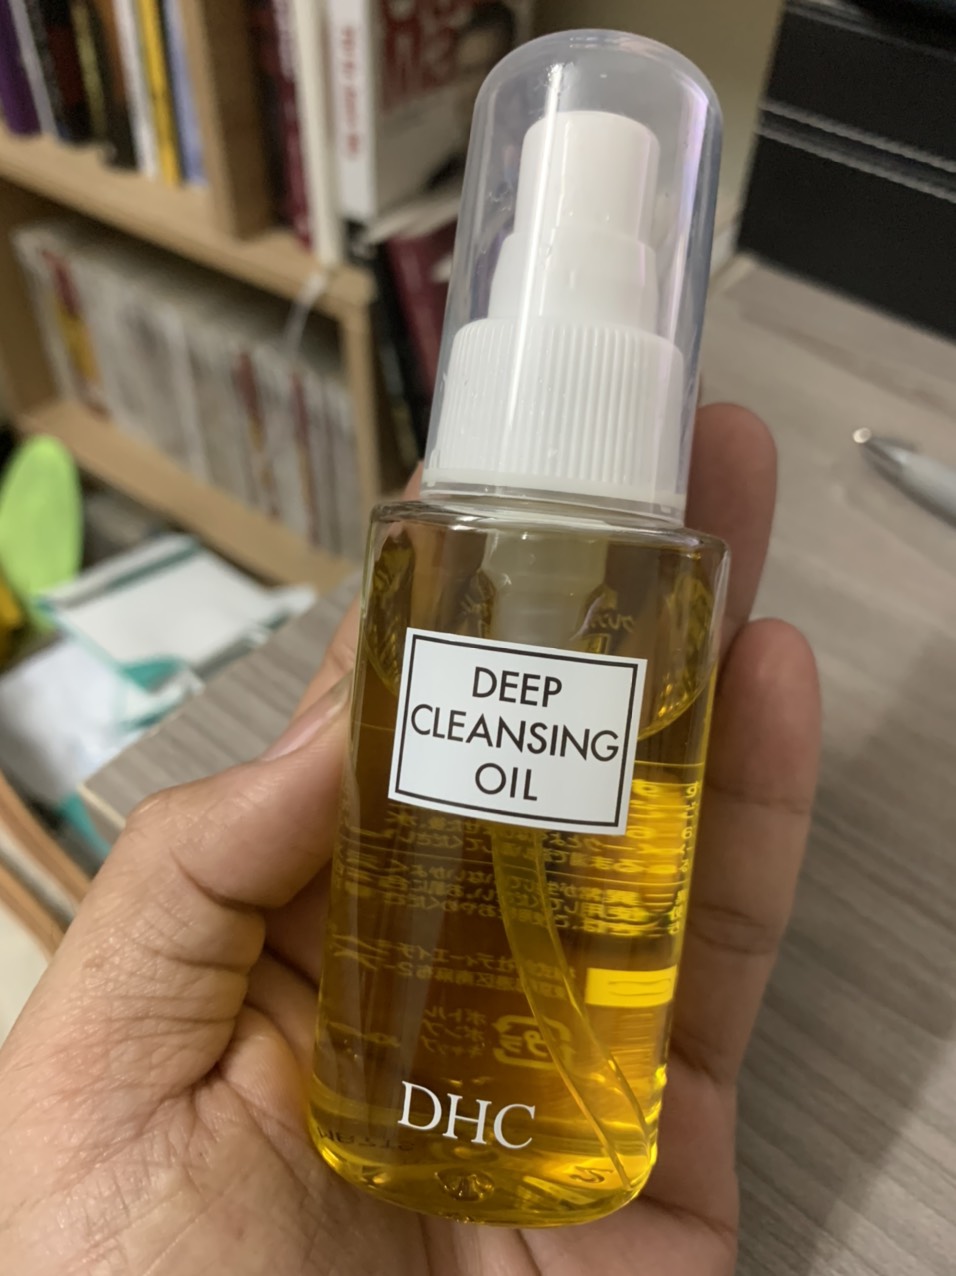 [FLASH SALE] Dầu tẩy trang DHC Deep Cleansing Oil Nhật Bản chính hãng | Thế Giới Skin Care